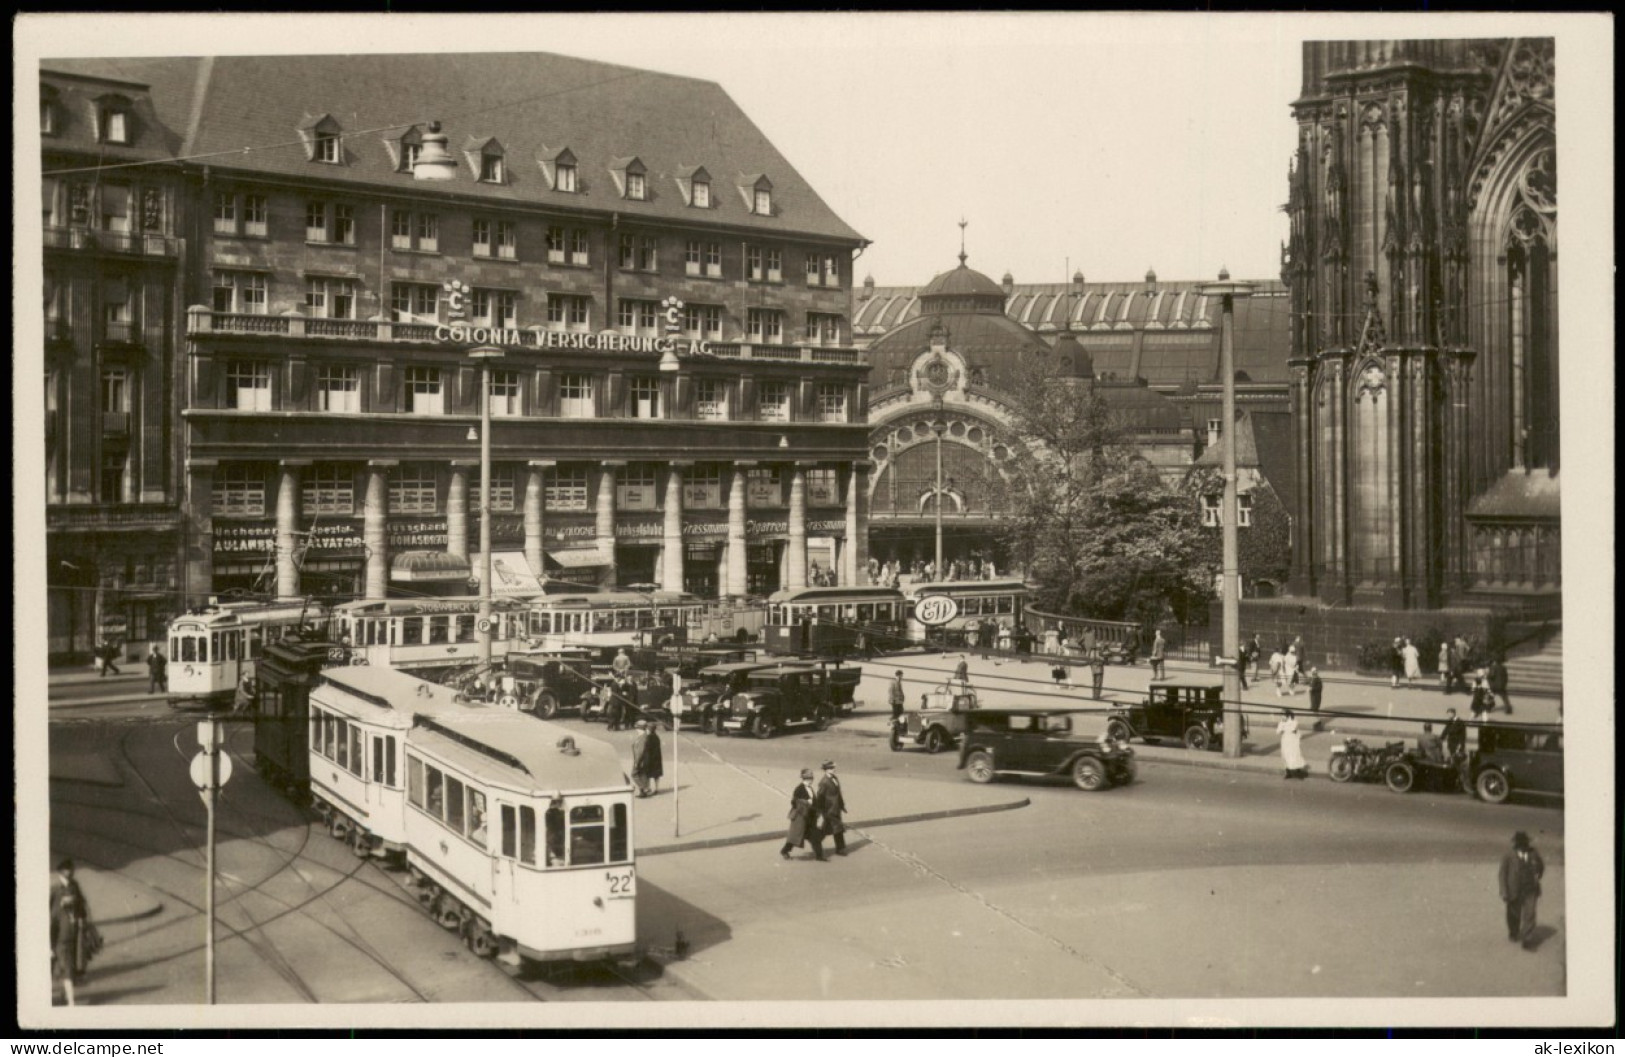 Köln Straßenbahn, Colonia Versicherungen, Bahnhof 1926 Privatfoto - Koeln